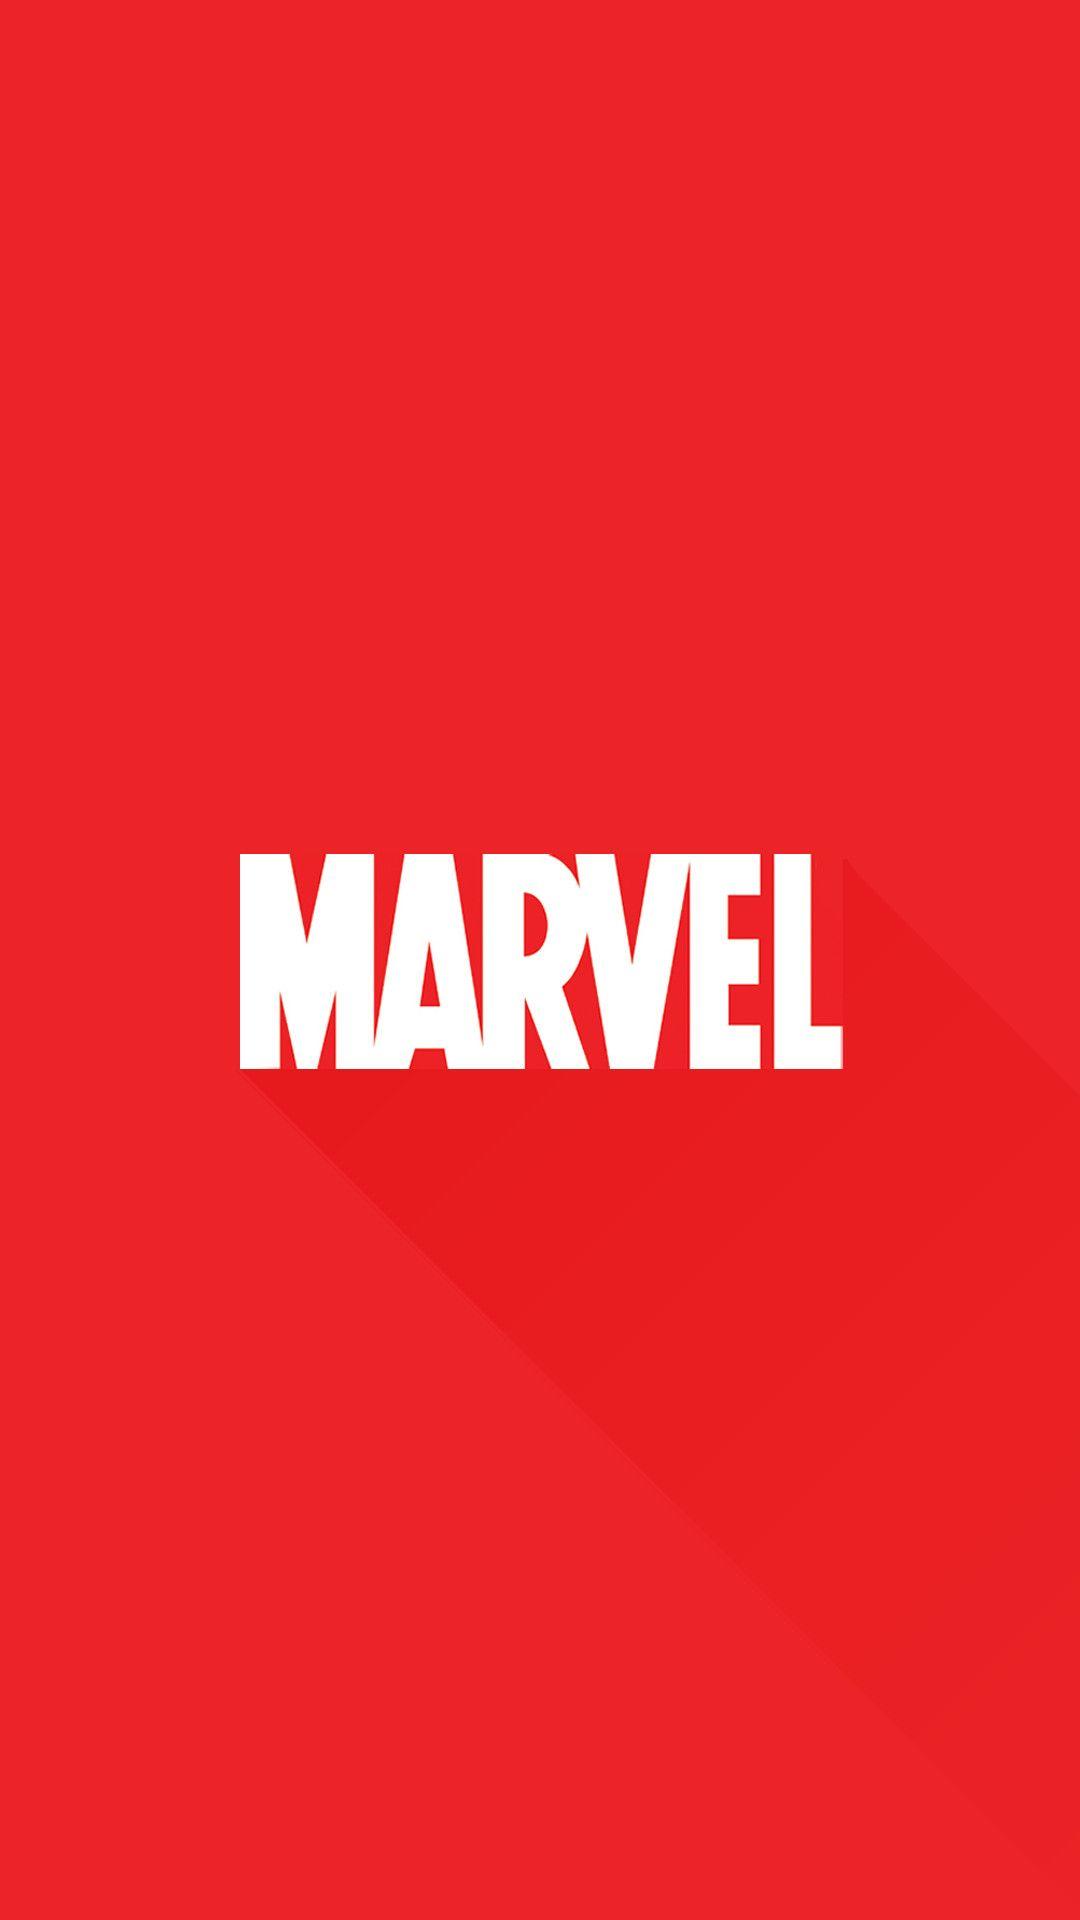 Marvel Logo. Marvel wallpaper, Marvel phone wallpaper, Marvel iphone wallpaper